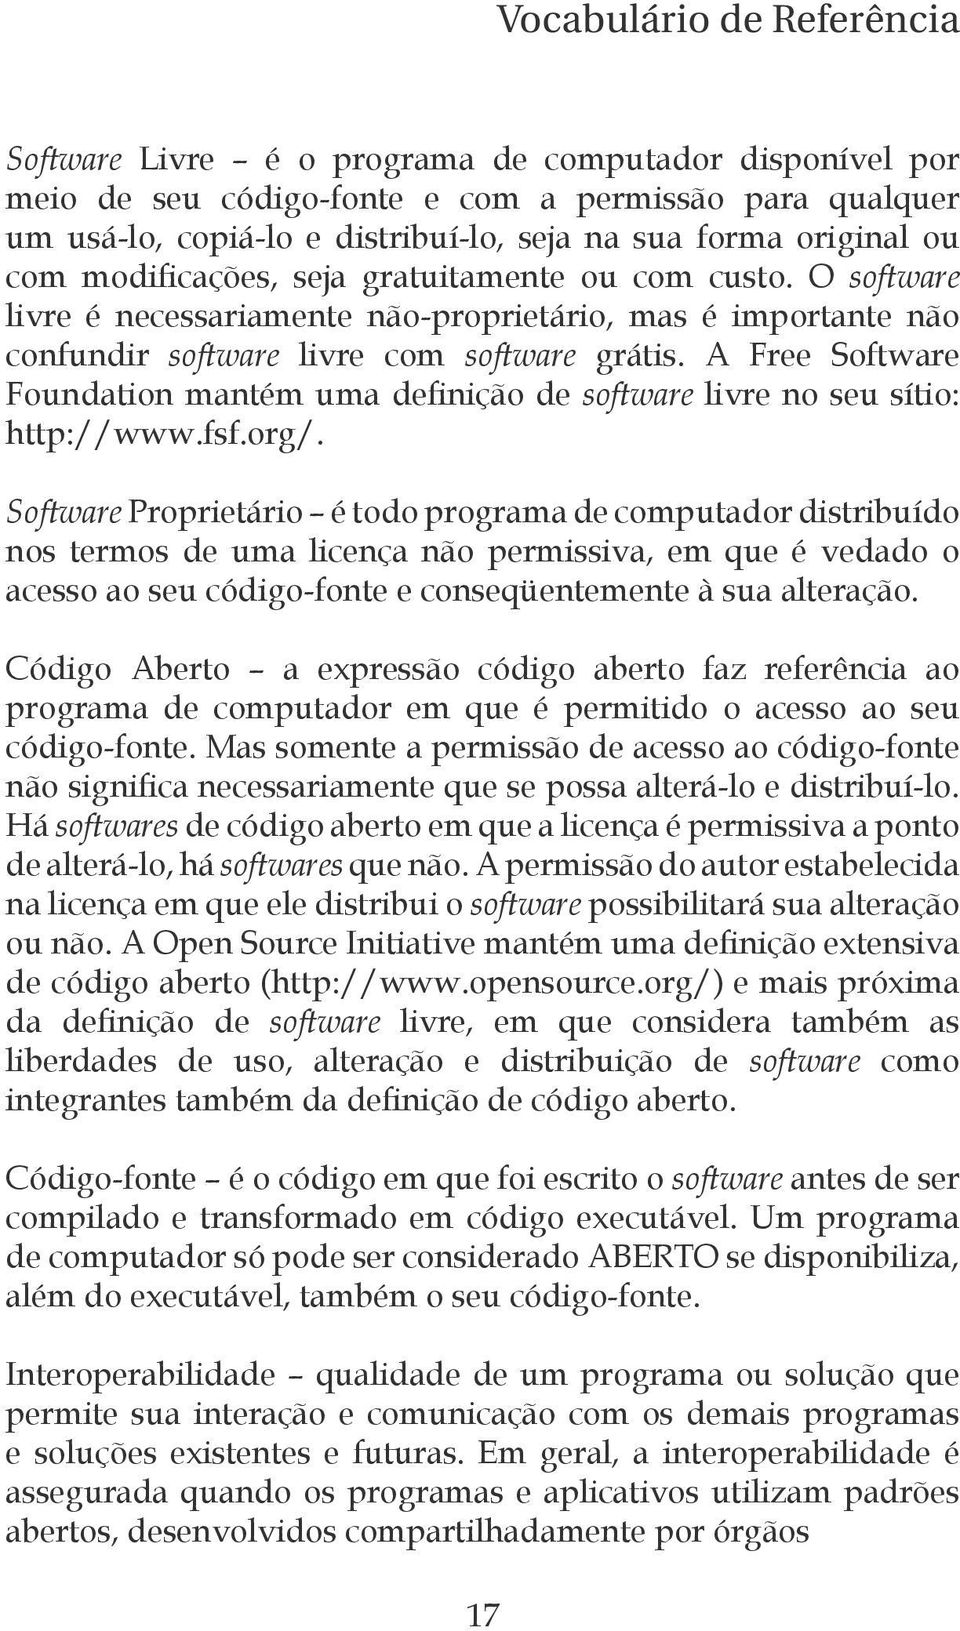 A Free Software Foundation mantém uma definição de software livre no seu sítio: http://www.fsf.org/.